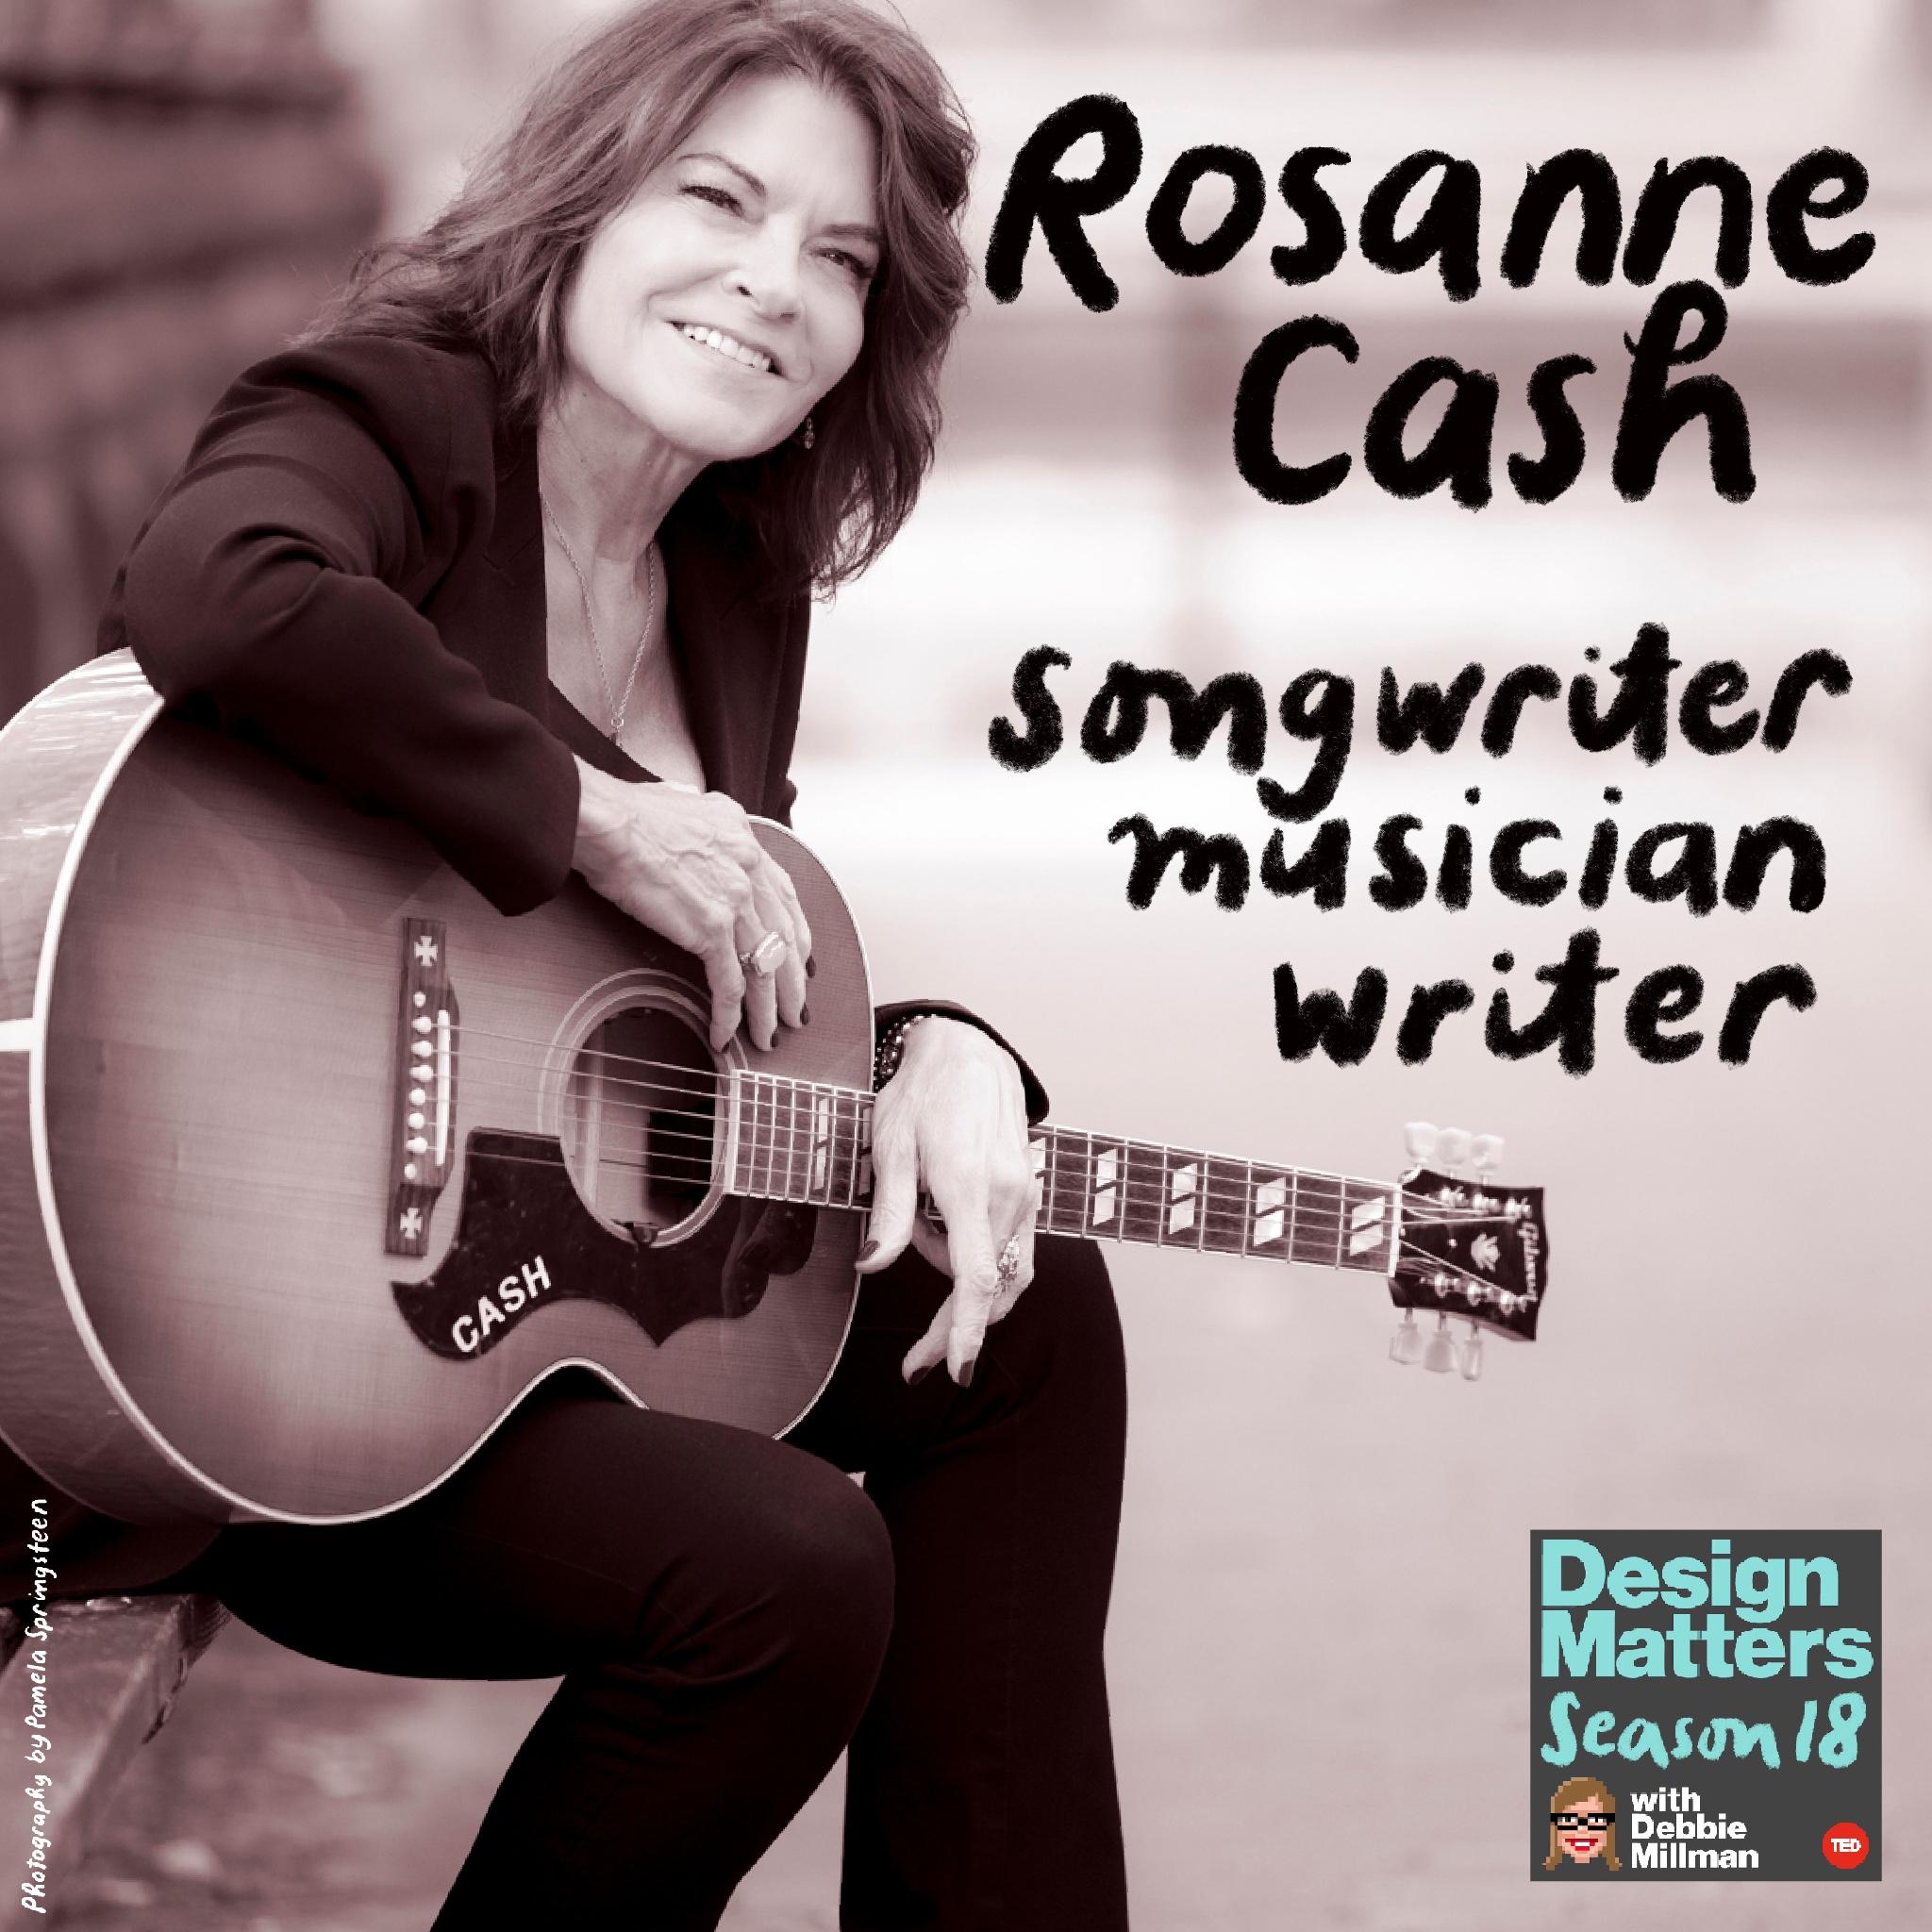 Thumbnail for "Rosanne Cash".